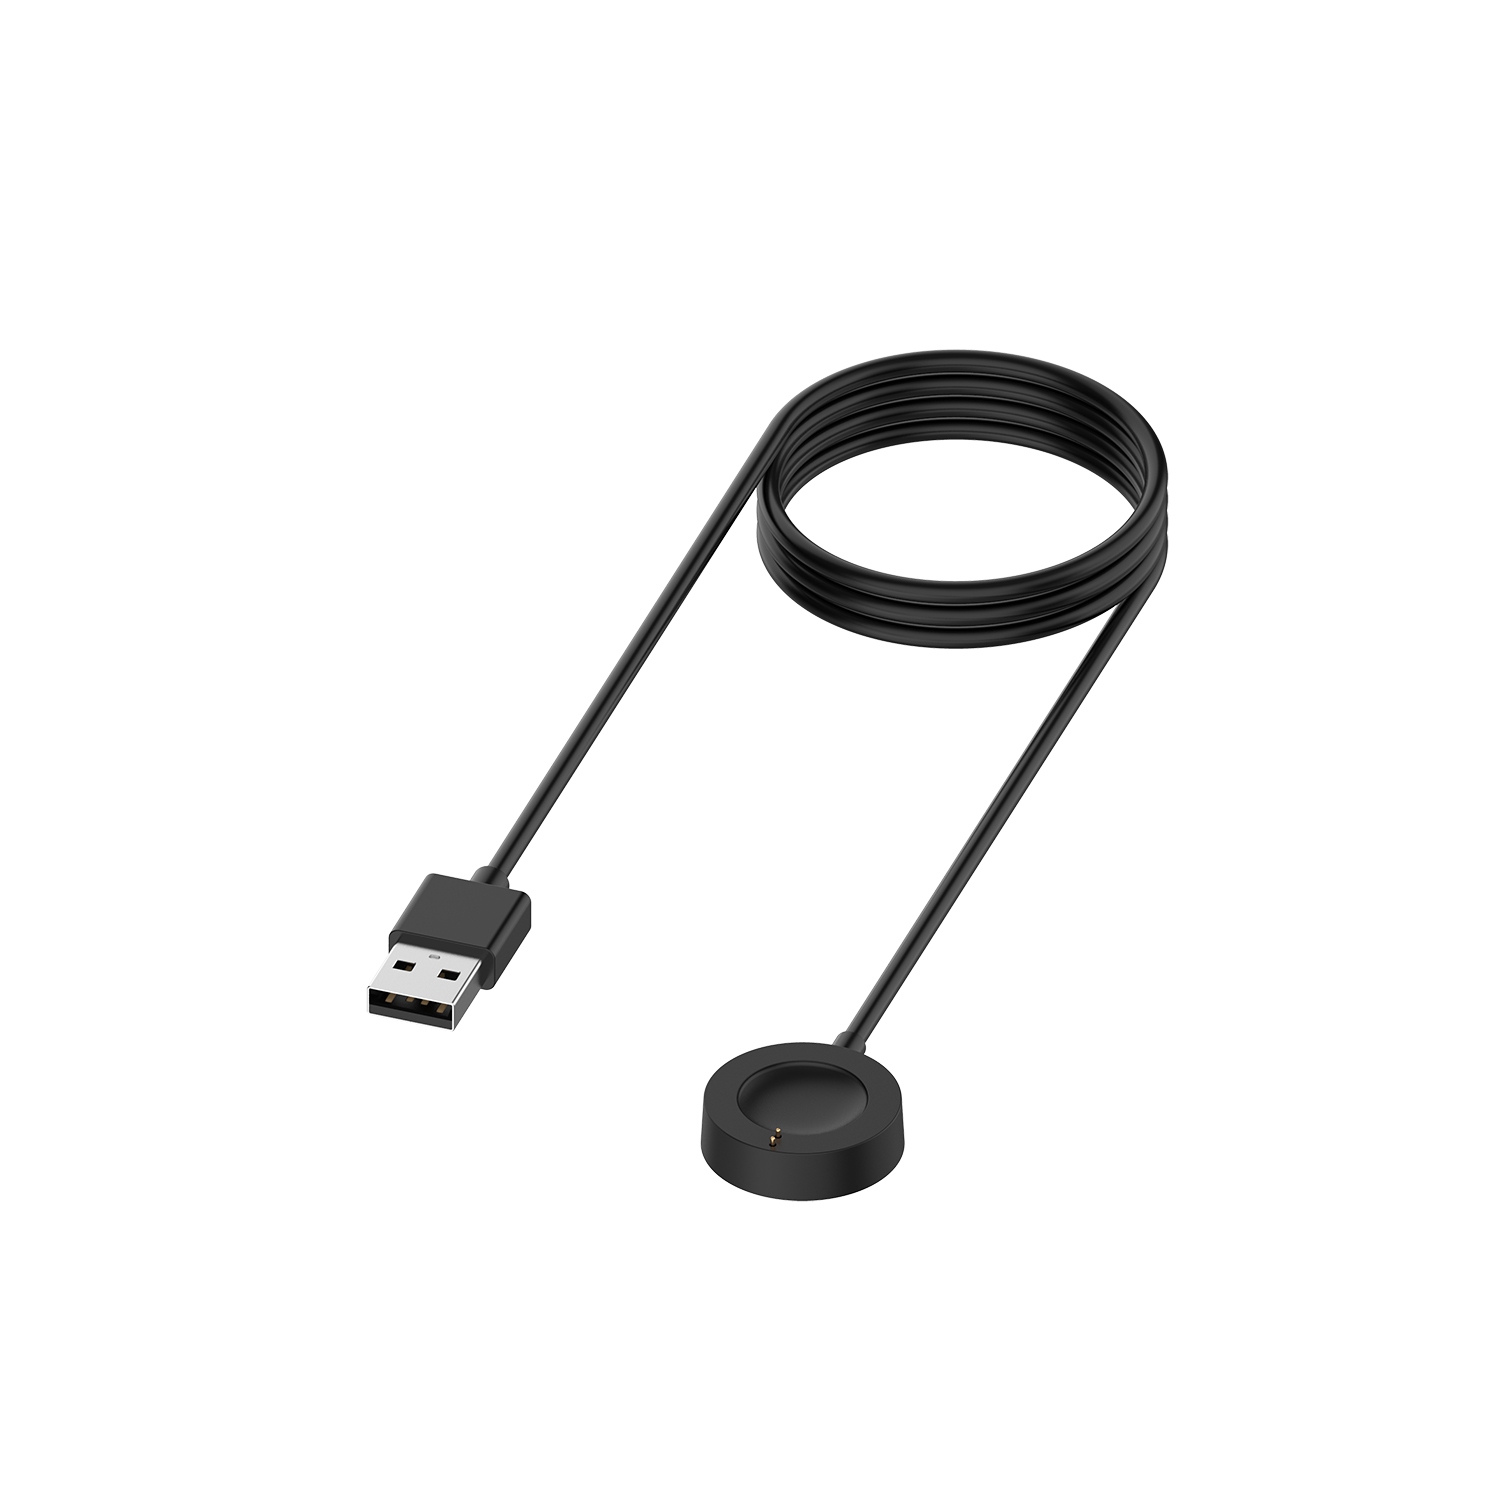 StrapsCo USB Charger for Misfit Vapor 2 - Black